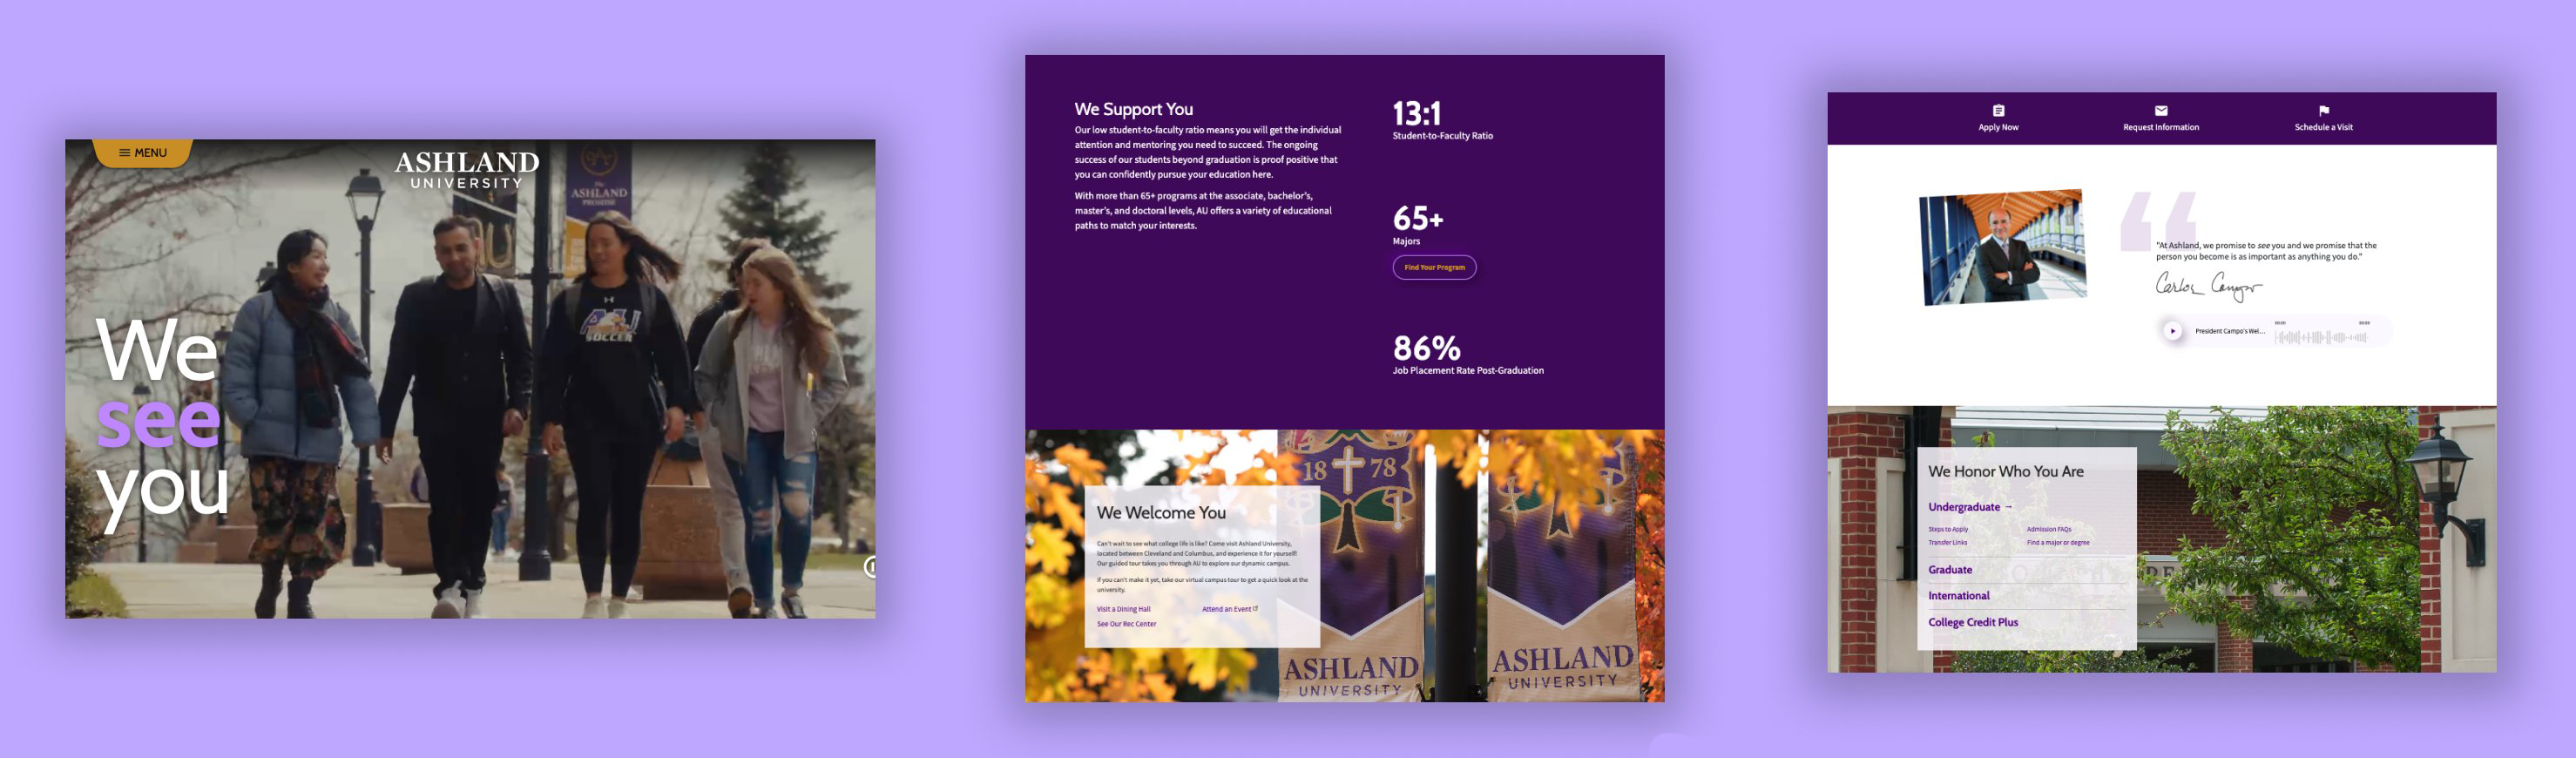 Ashland University website